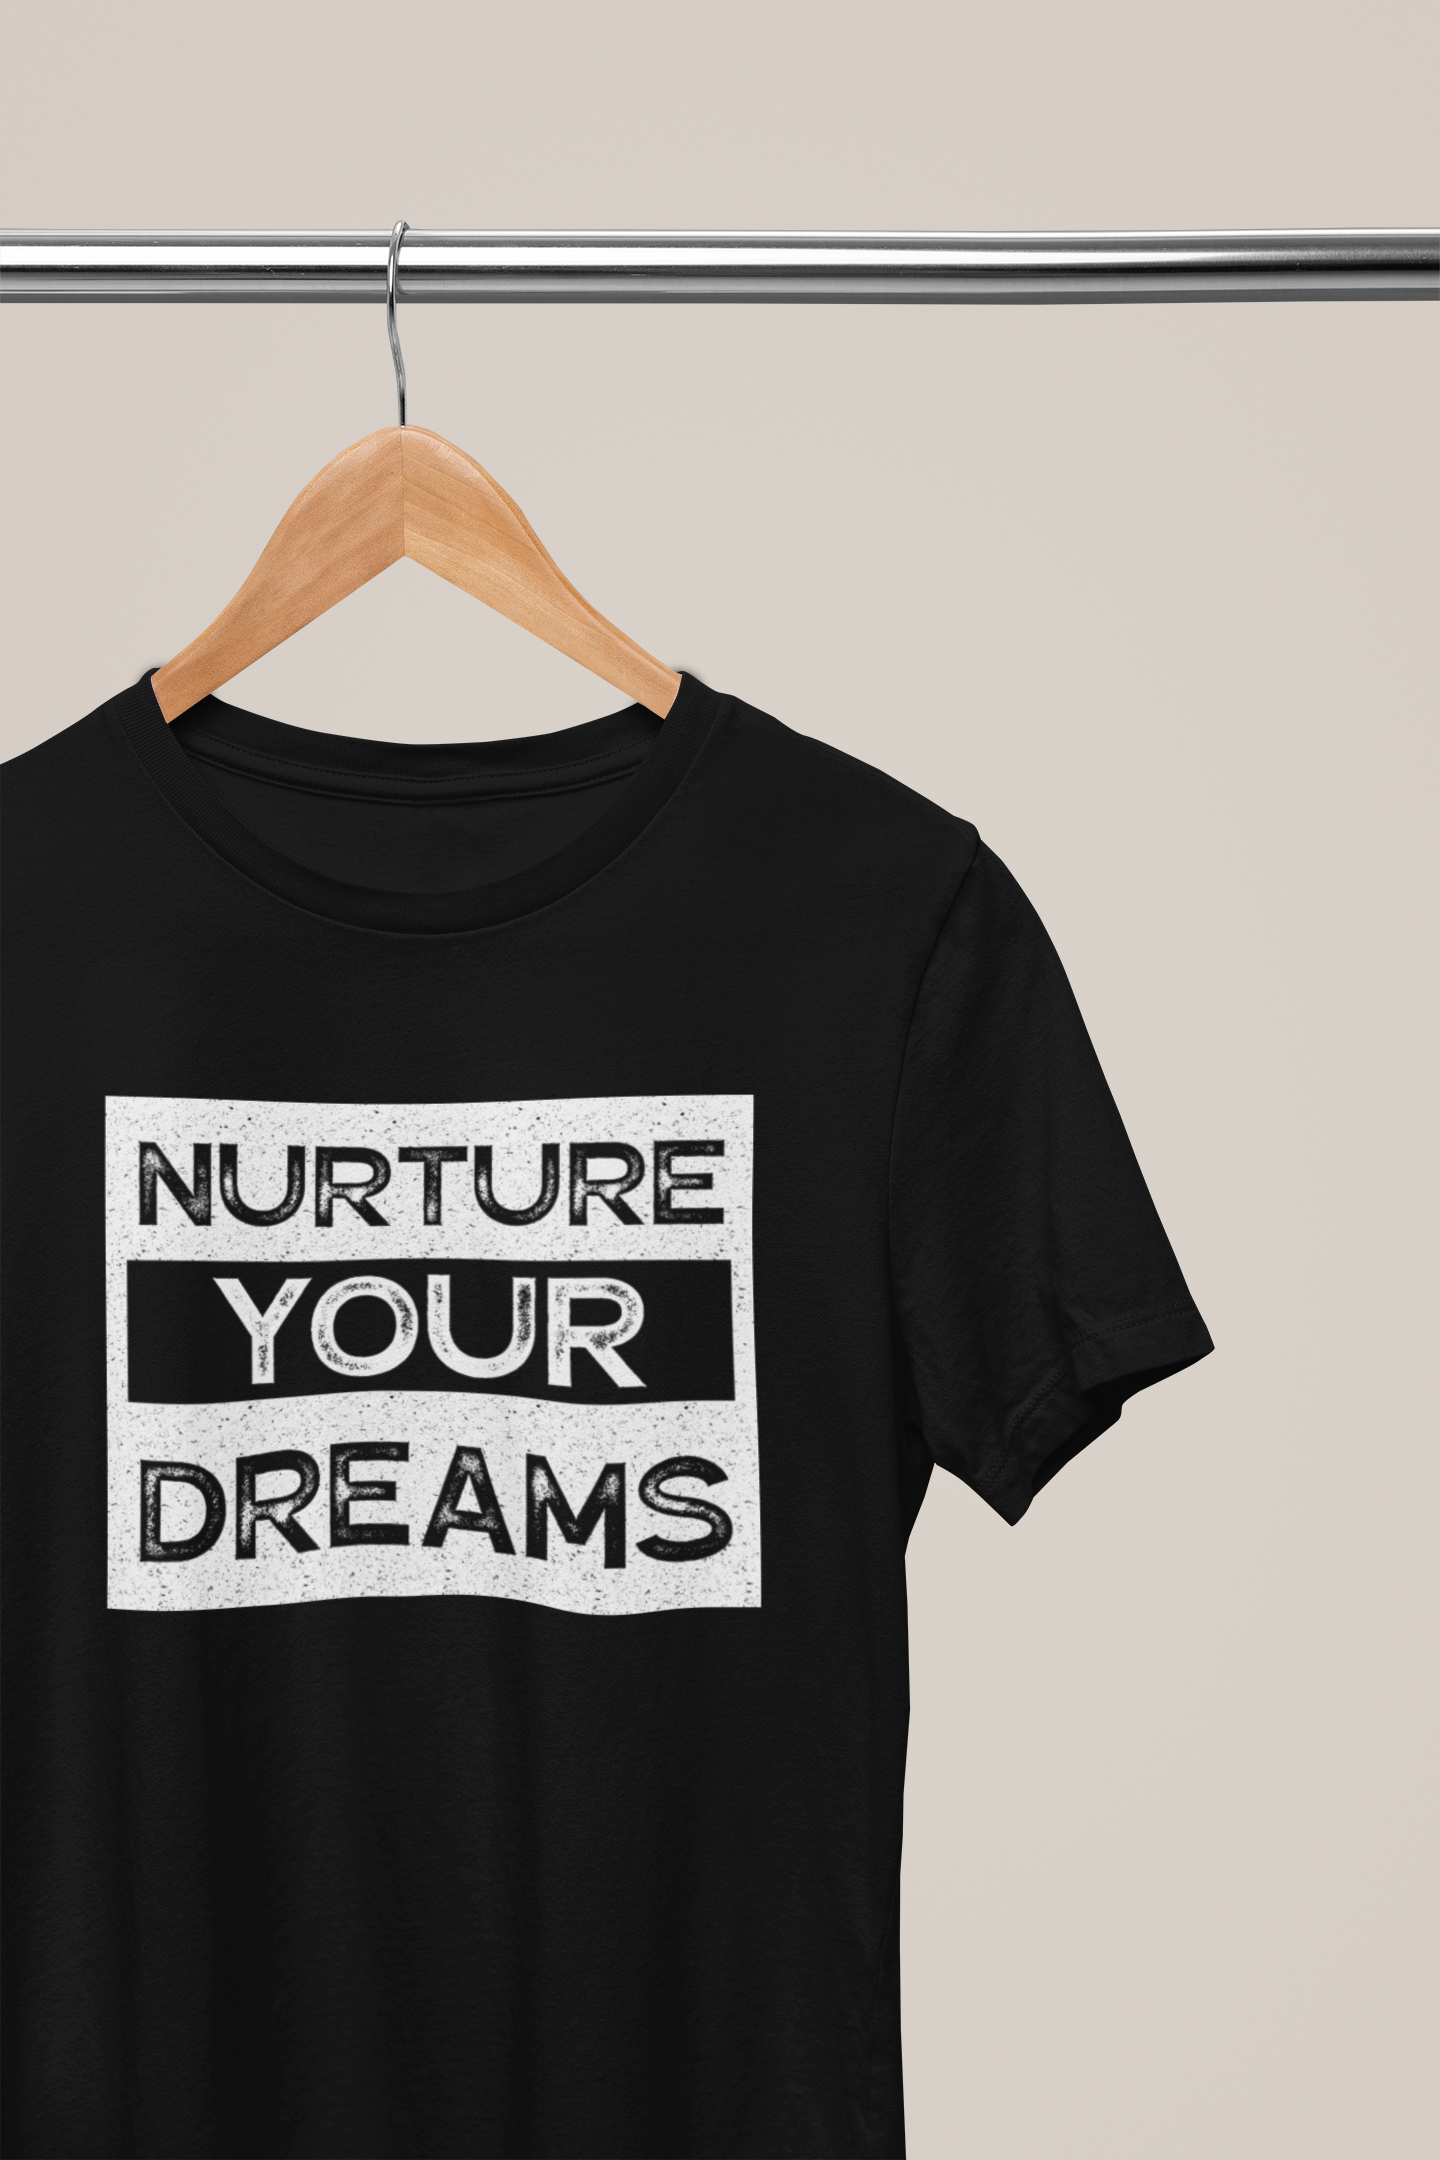 Nurture Your Dreams, Hoodies, Sweatshirts, Tees, and Mugs